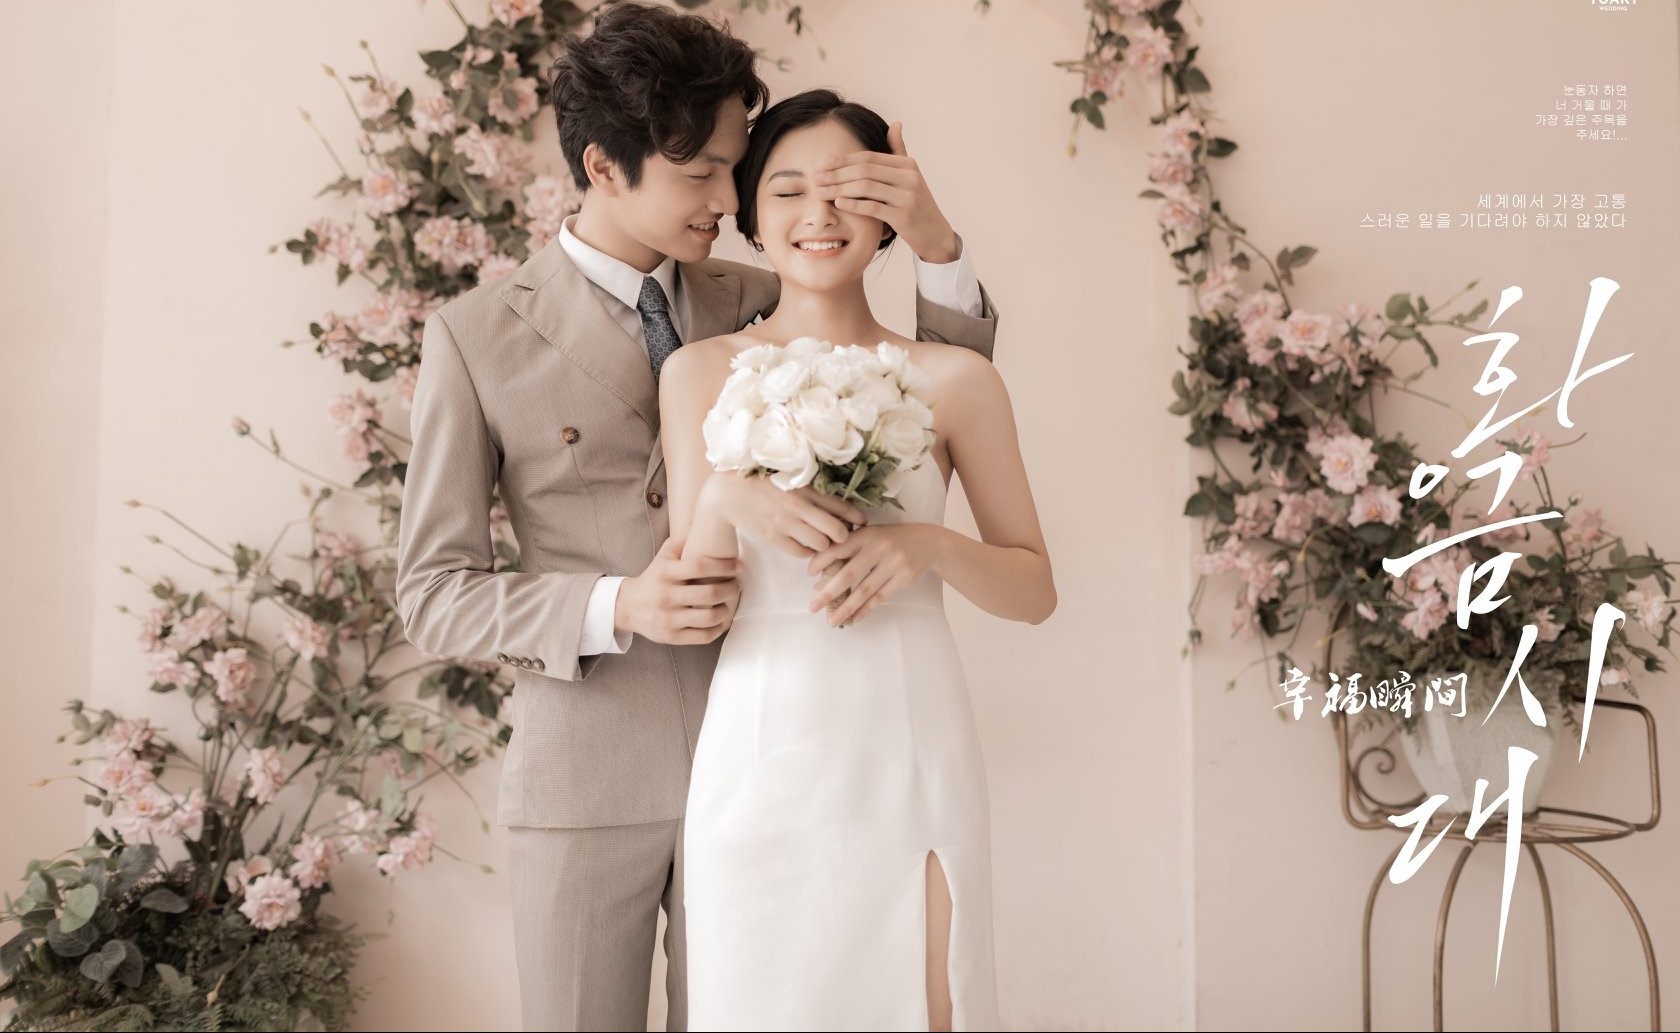 Chuẩn bị cho chụp ảnh cưới theo phong cách Hàn Quốc để tận hưởng trọn vẹn một lễ cưới đầy ấn tượng. Chúng tôi sẽ giúp bạn sáng tạo và chọn lựa những góc chụp độc đáo để tạo ra những bức ảnh đẹp nhất. Hãy để chúng tôi giúp bạn tạo dấu ấn riêng cho lễ cưới của bạn.